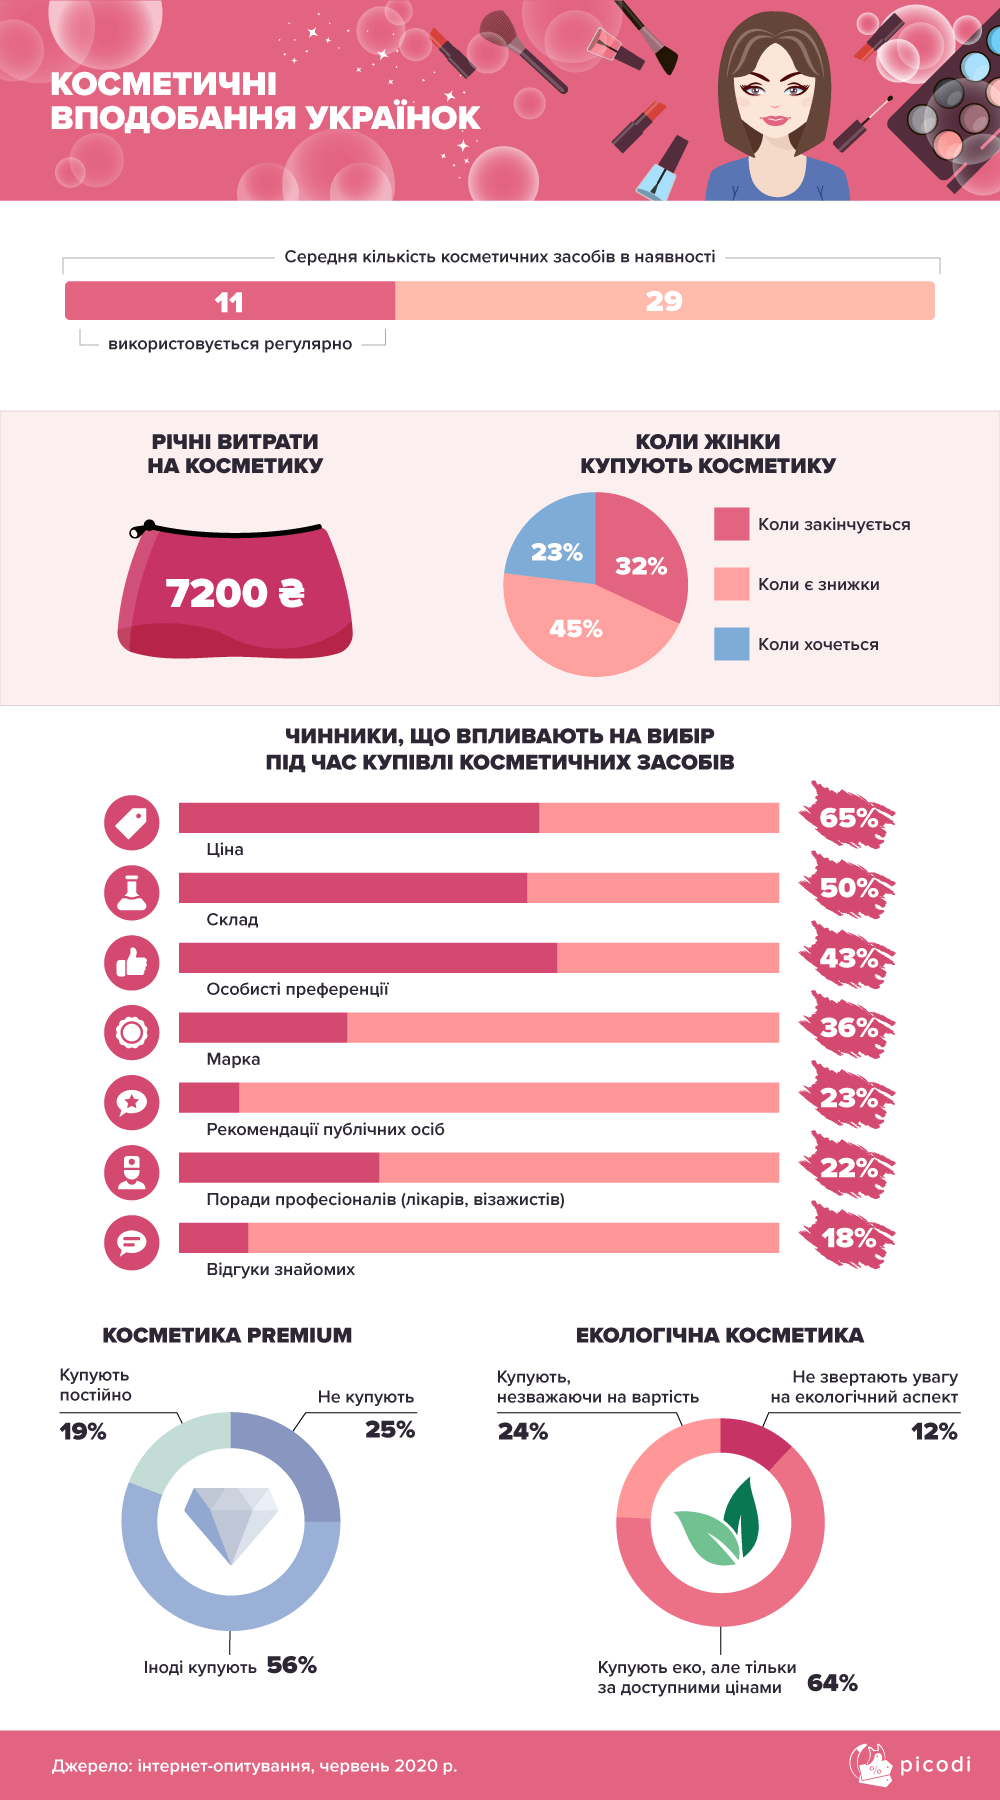 Как покупают косметику женщины. Инфографика: Picodi.com